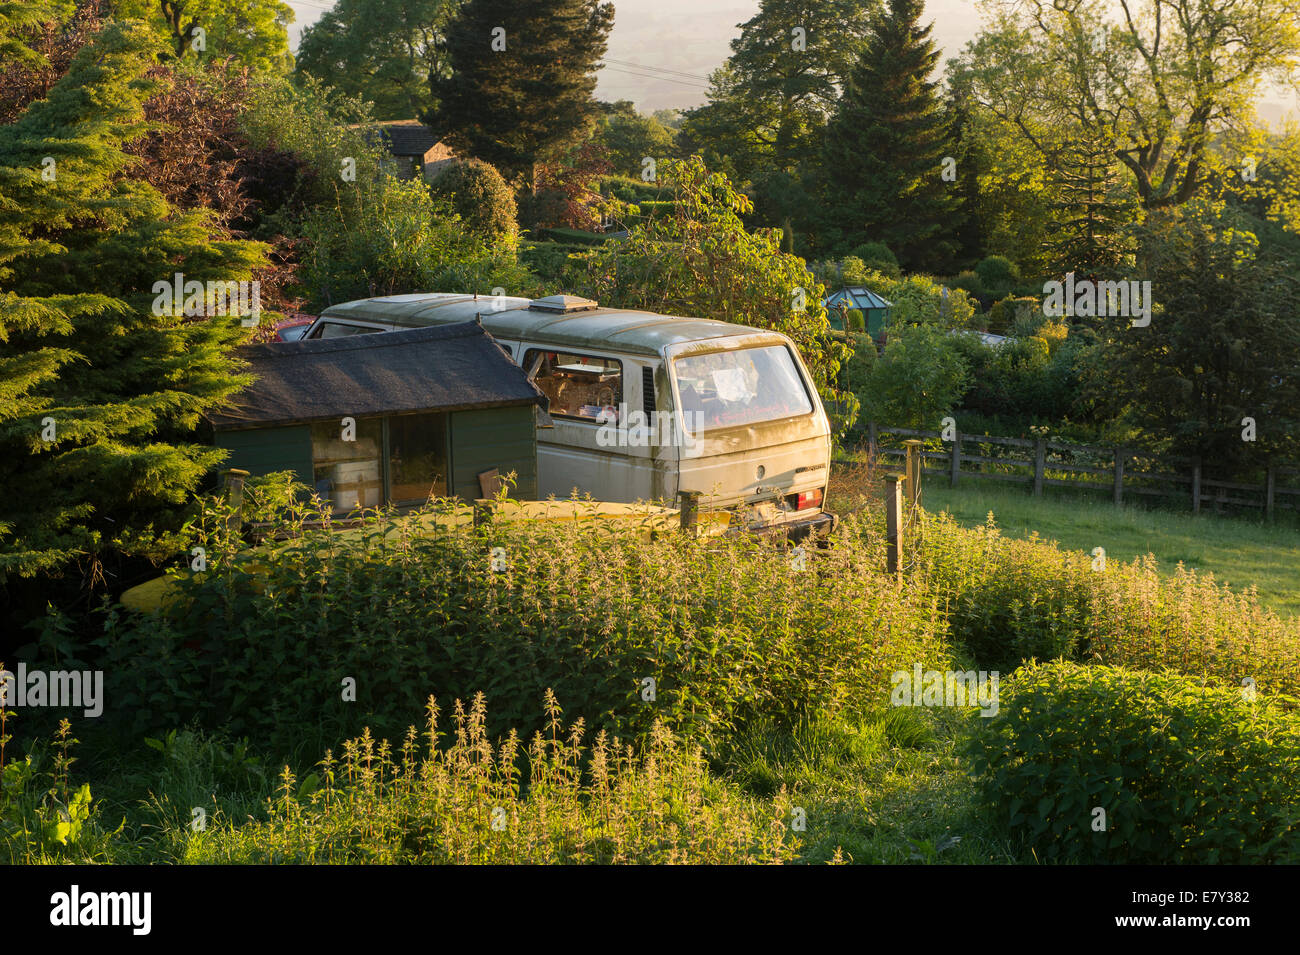 Alt, schmutzig, ungepflegt, geparkten VW Camper Van in schönen, sonnigen, gepflegten Garten scheint - West Yorkshire, England, UK. Stockfoto